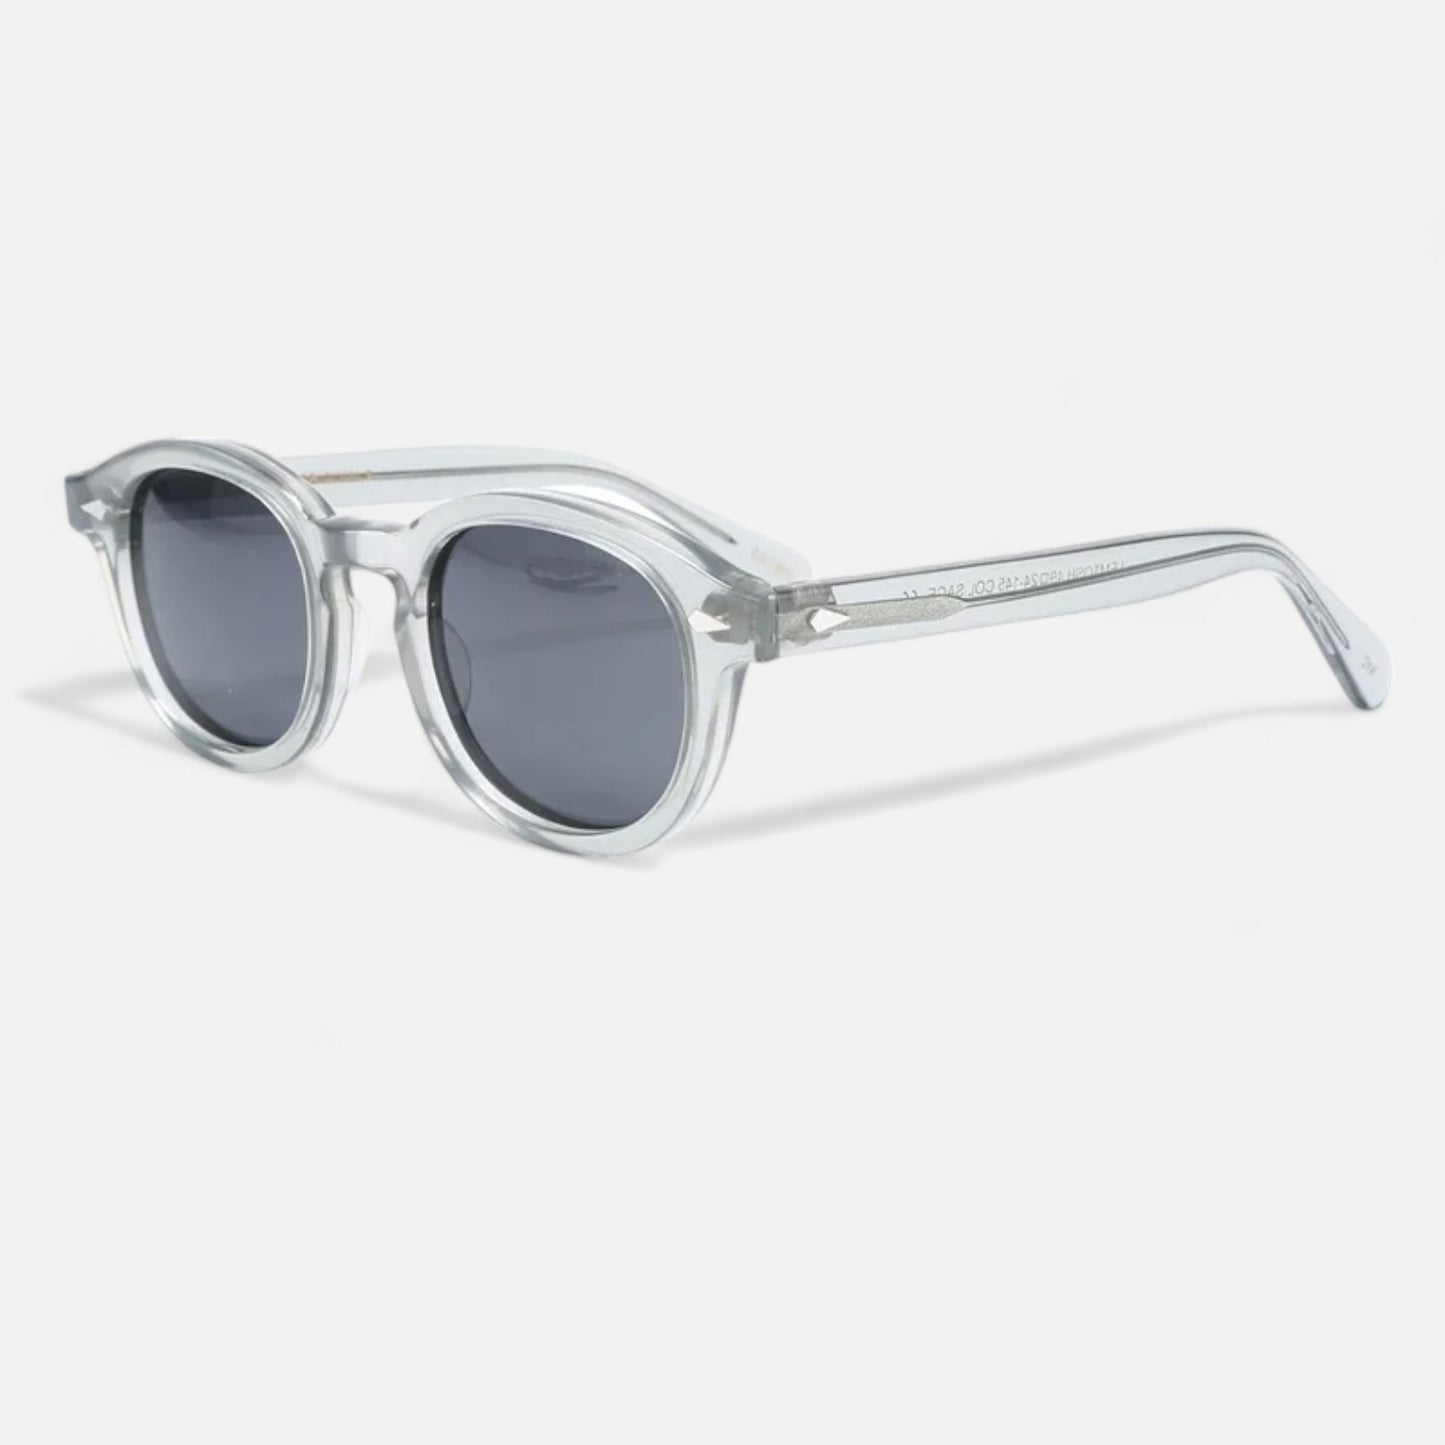 The Iapetus Sunglasses